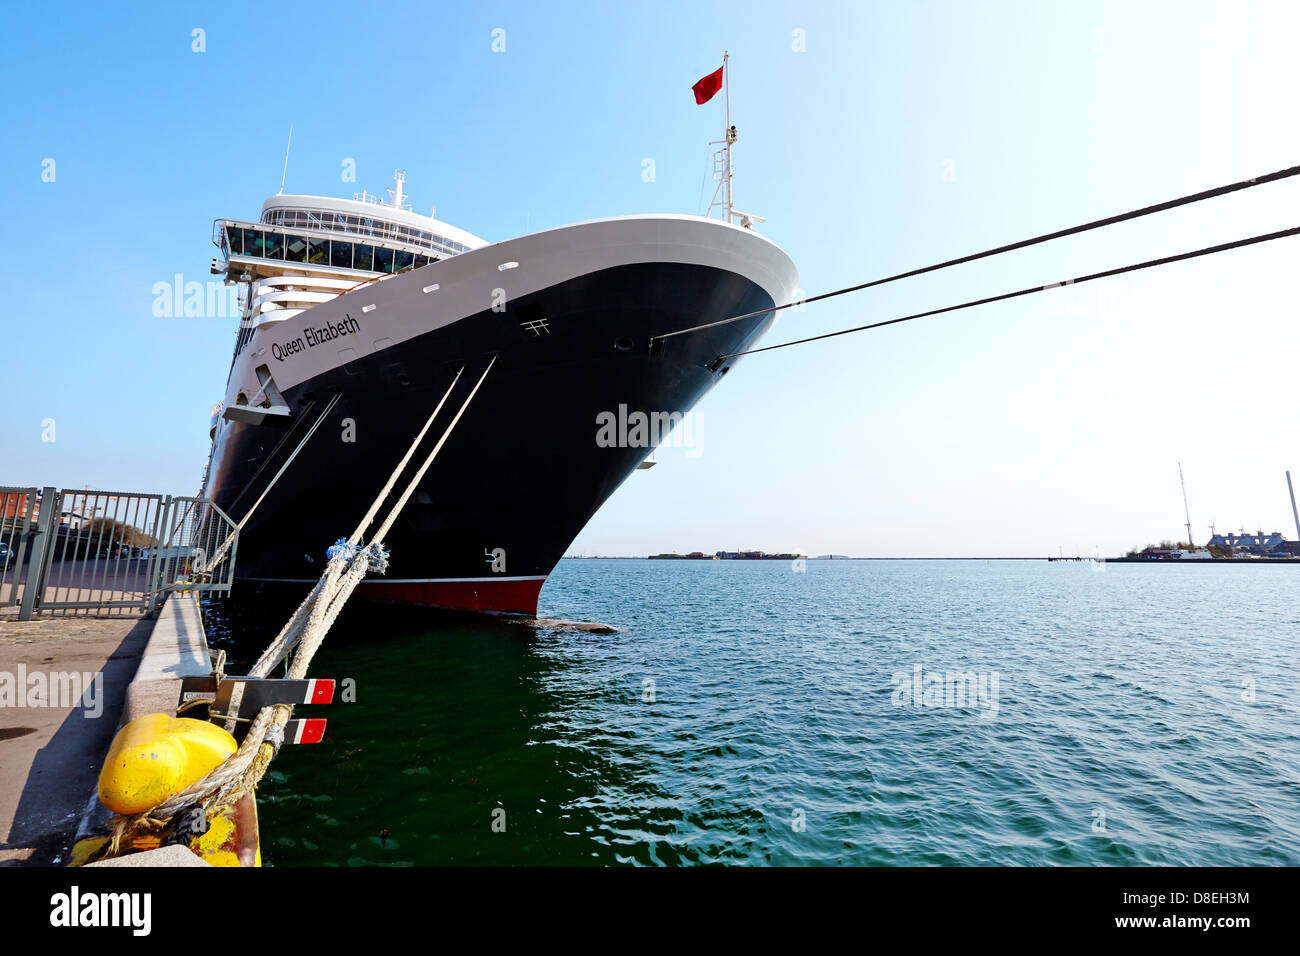 Puerto de cruceros copenhague fotografías e imágenes de alta resolución -  Página 3 - Alamy